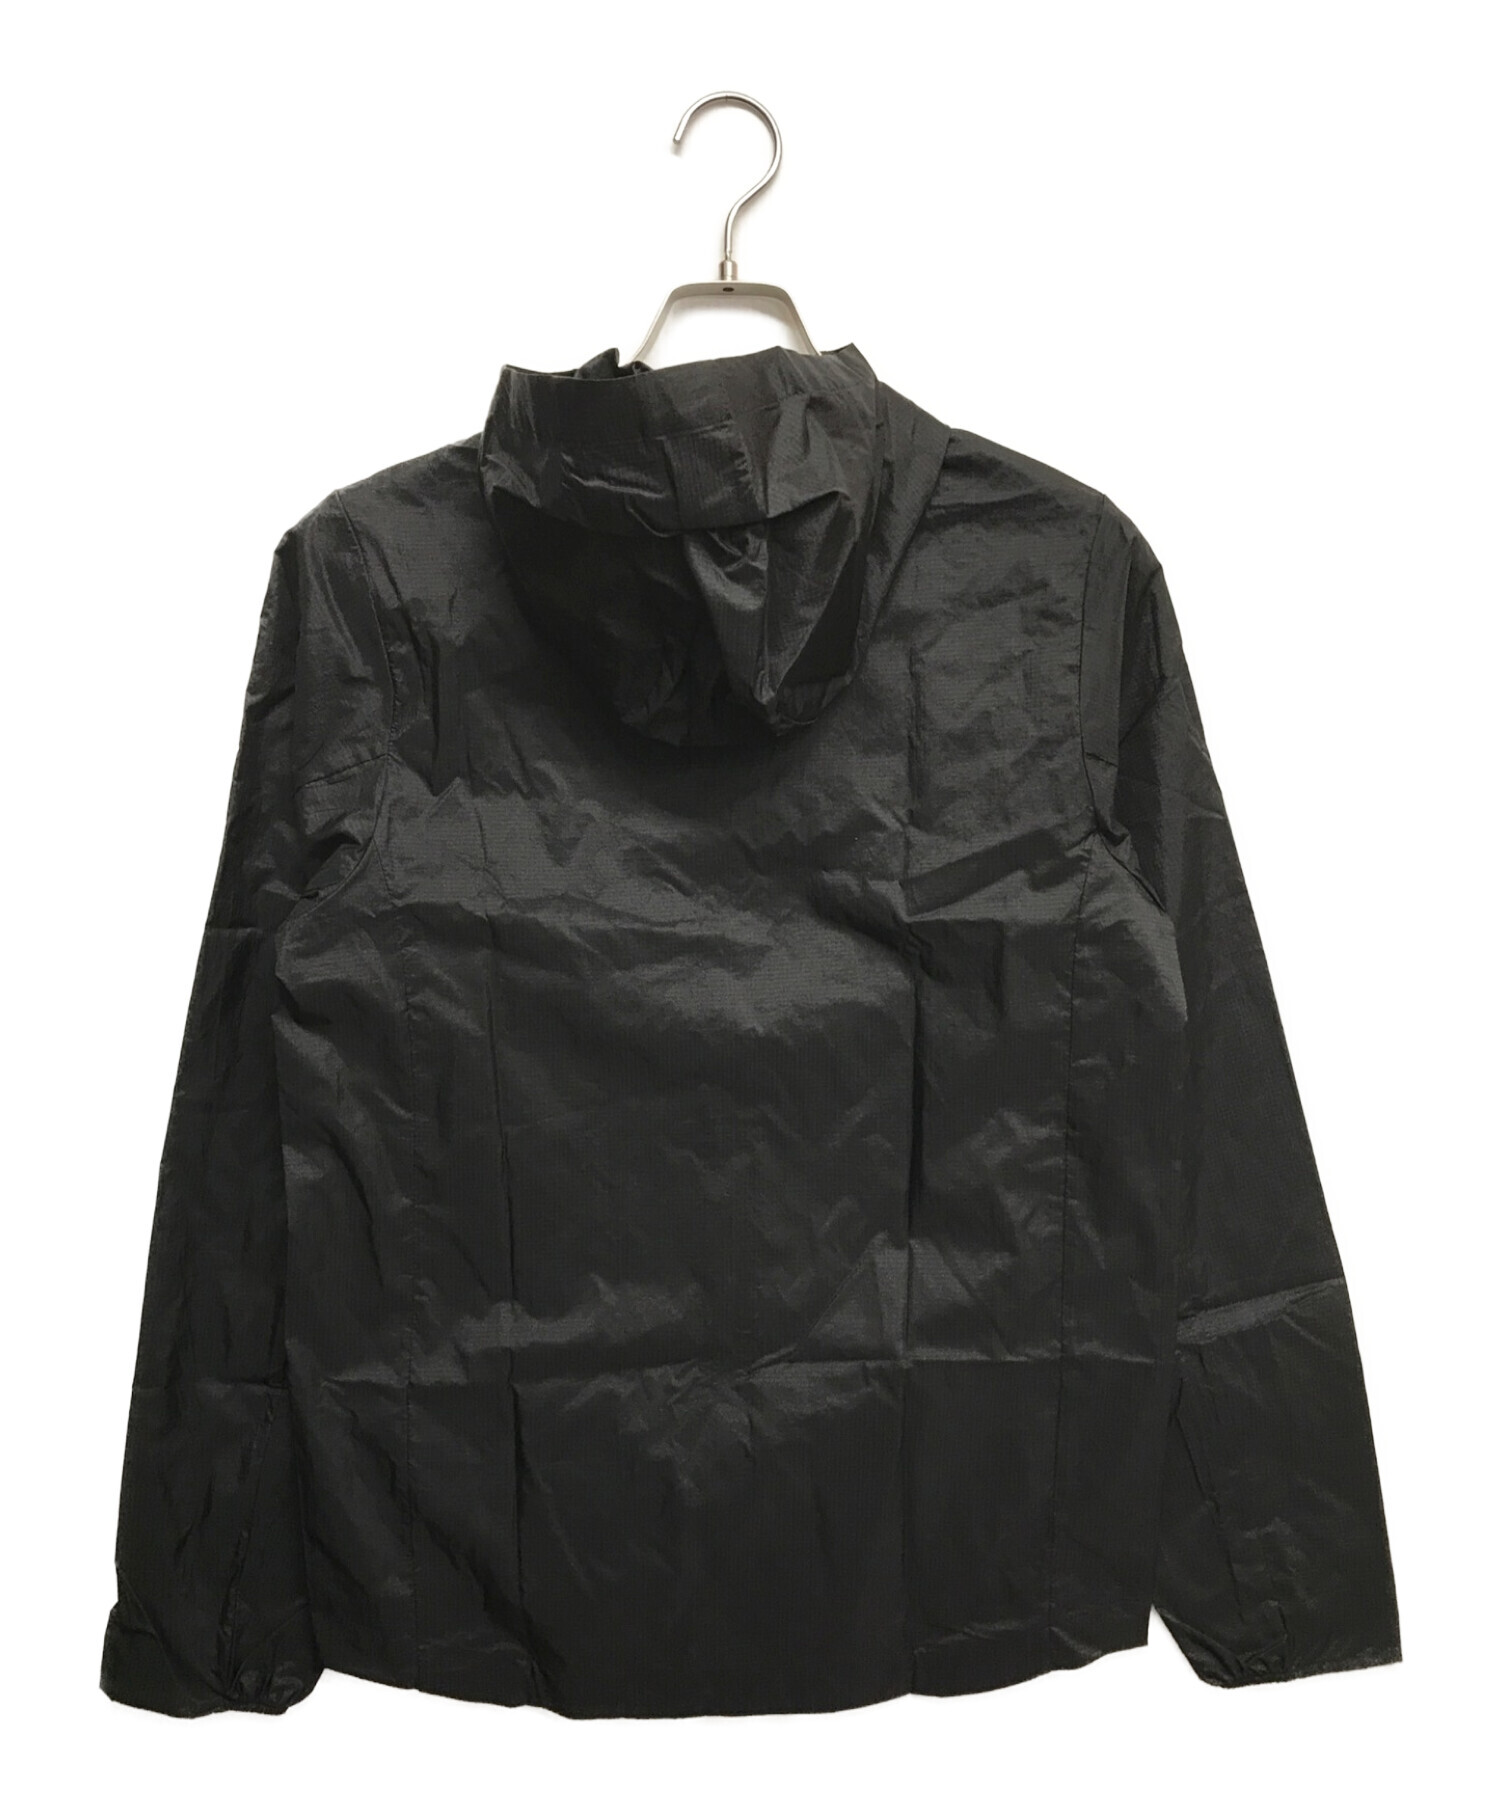 Patagonia (パタゴニア) フーディニジャケット ブラック サイズ:XS